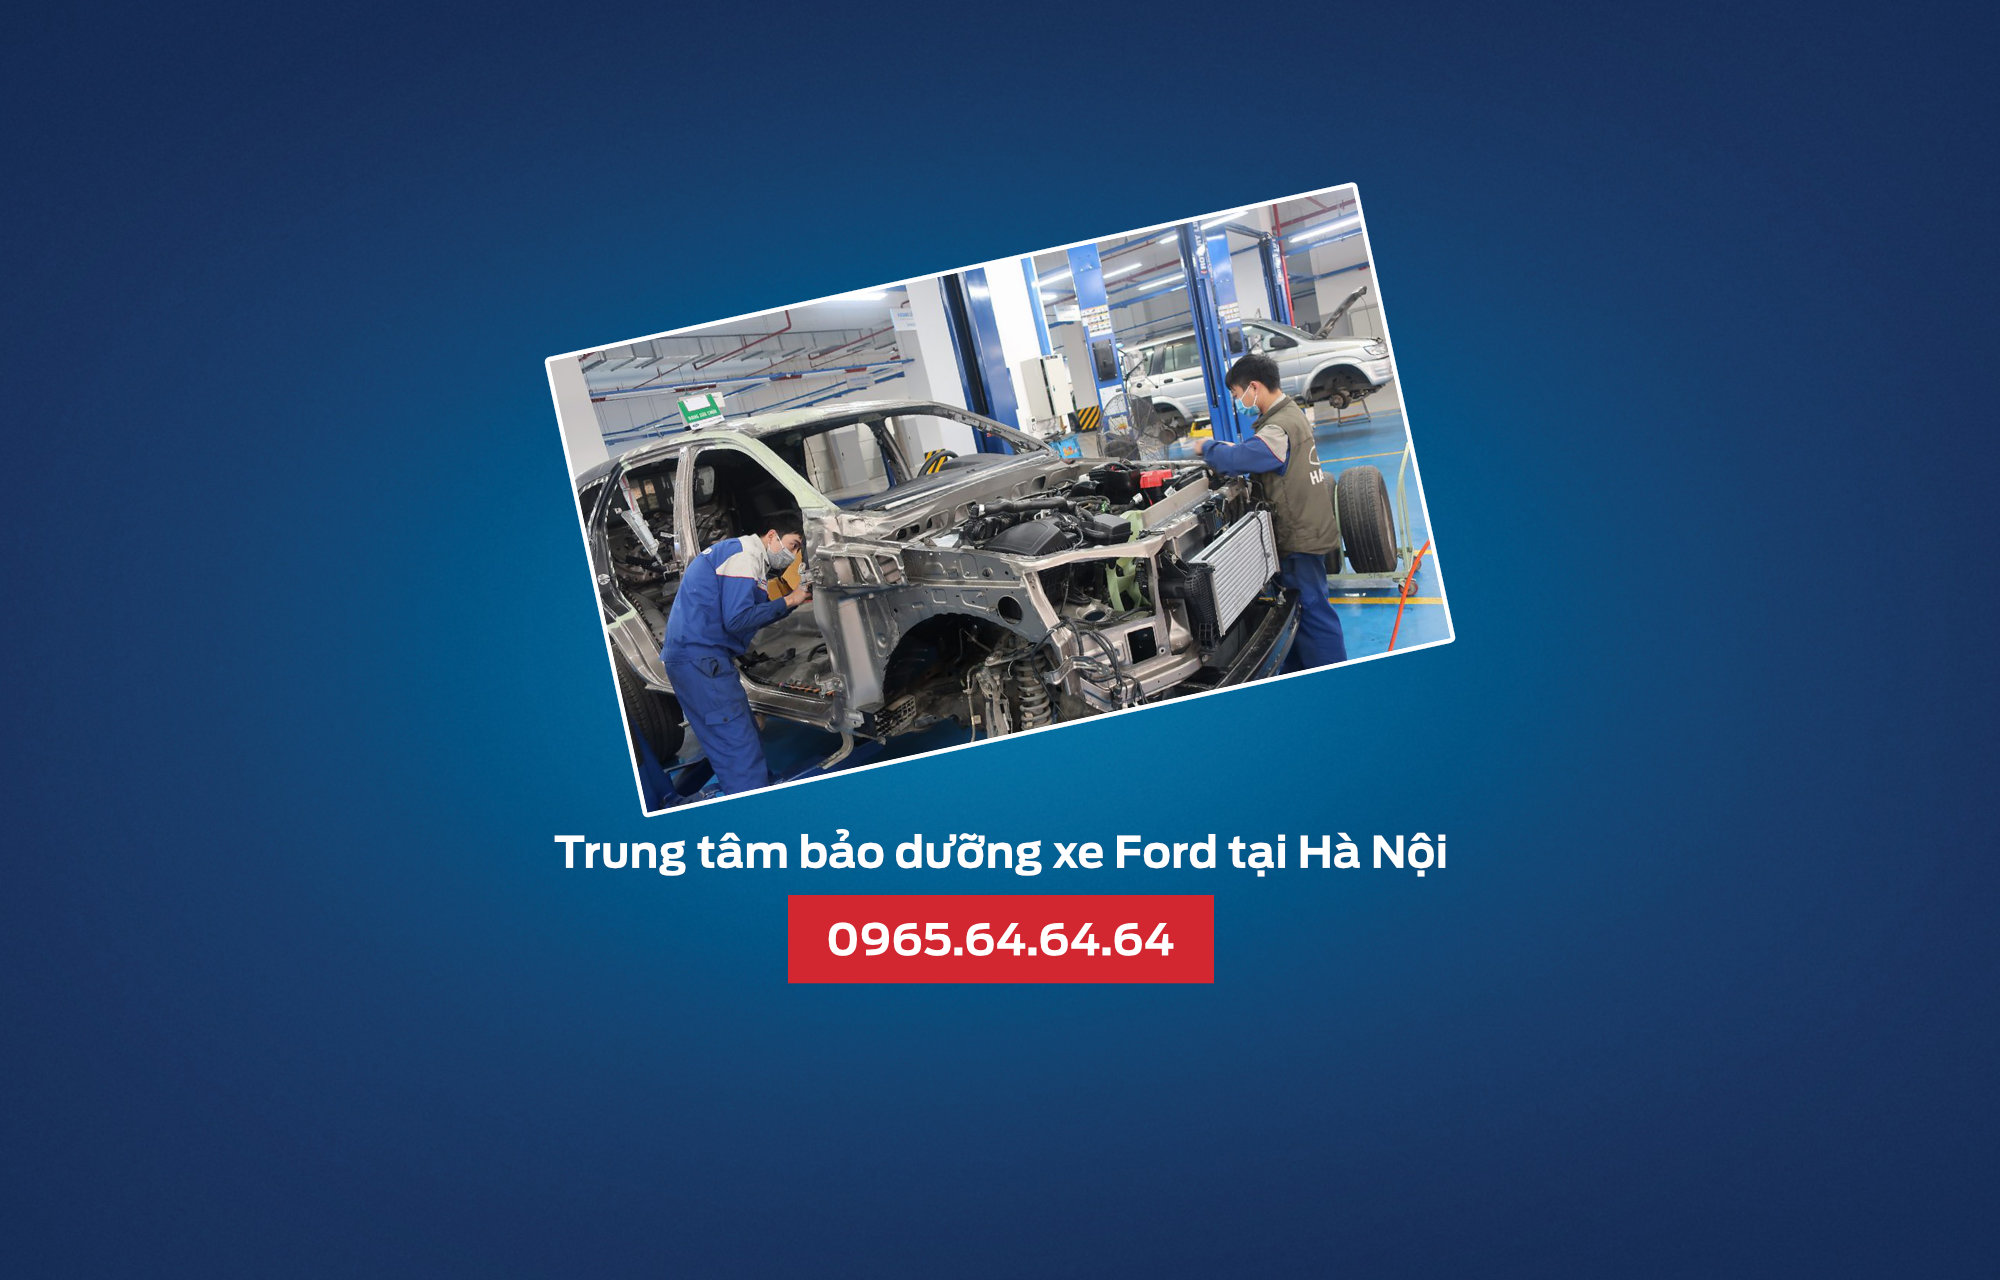 Trung tâm bảo dưỡng xe Ford tại Hà Nội